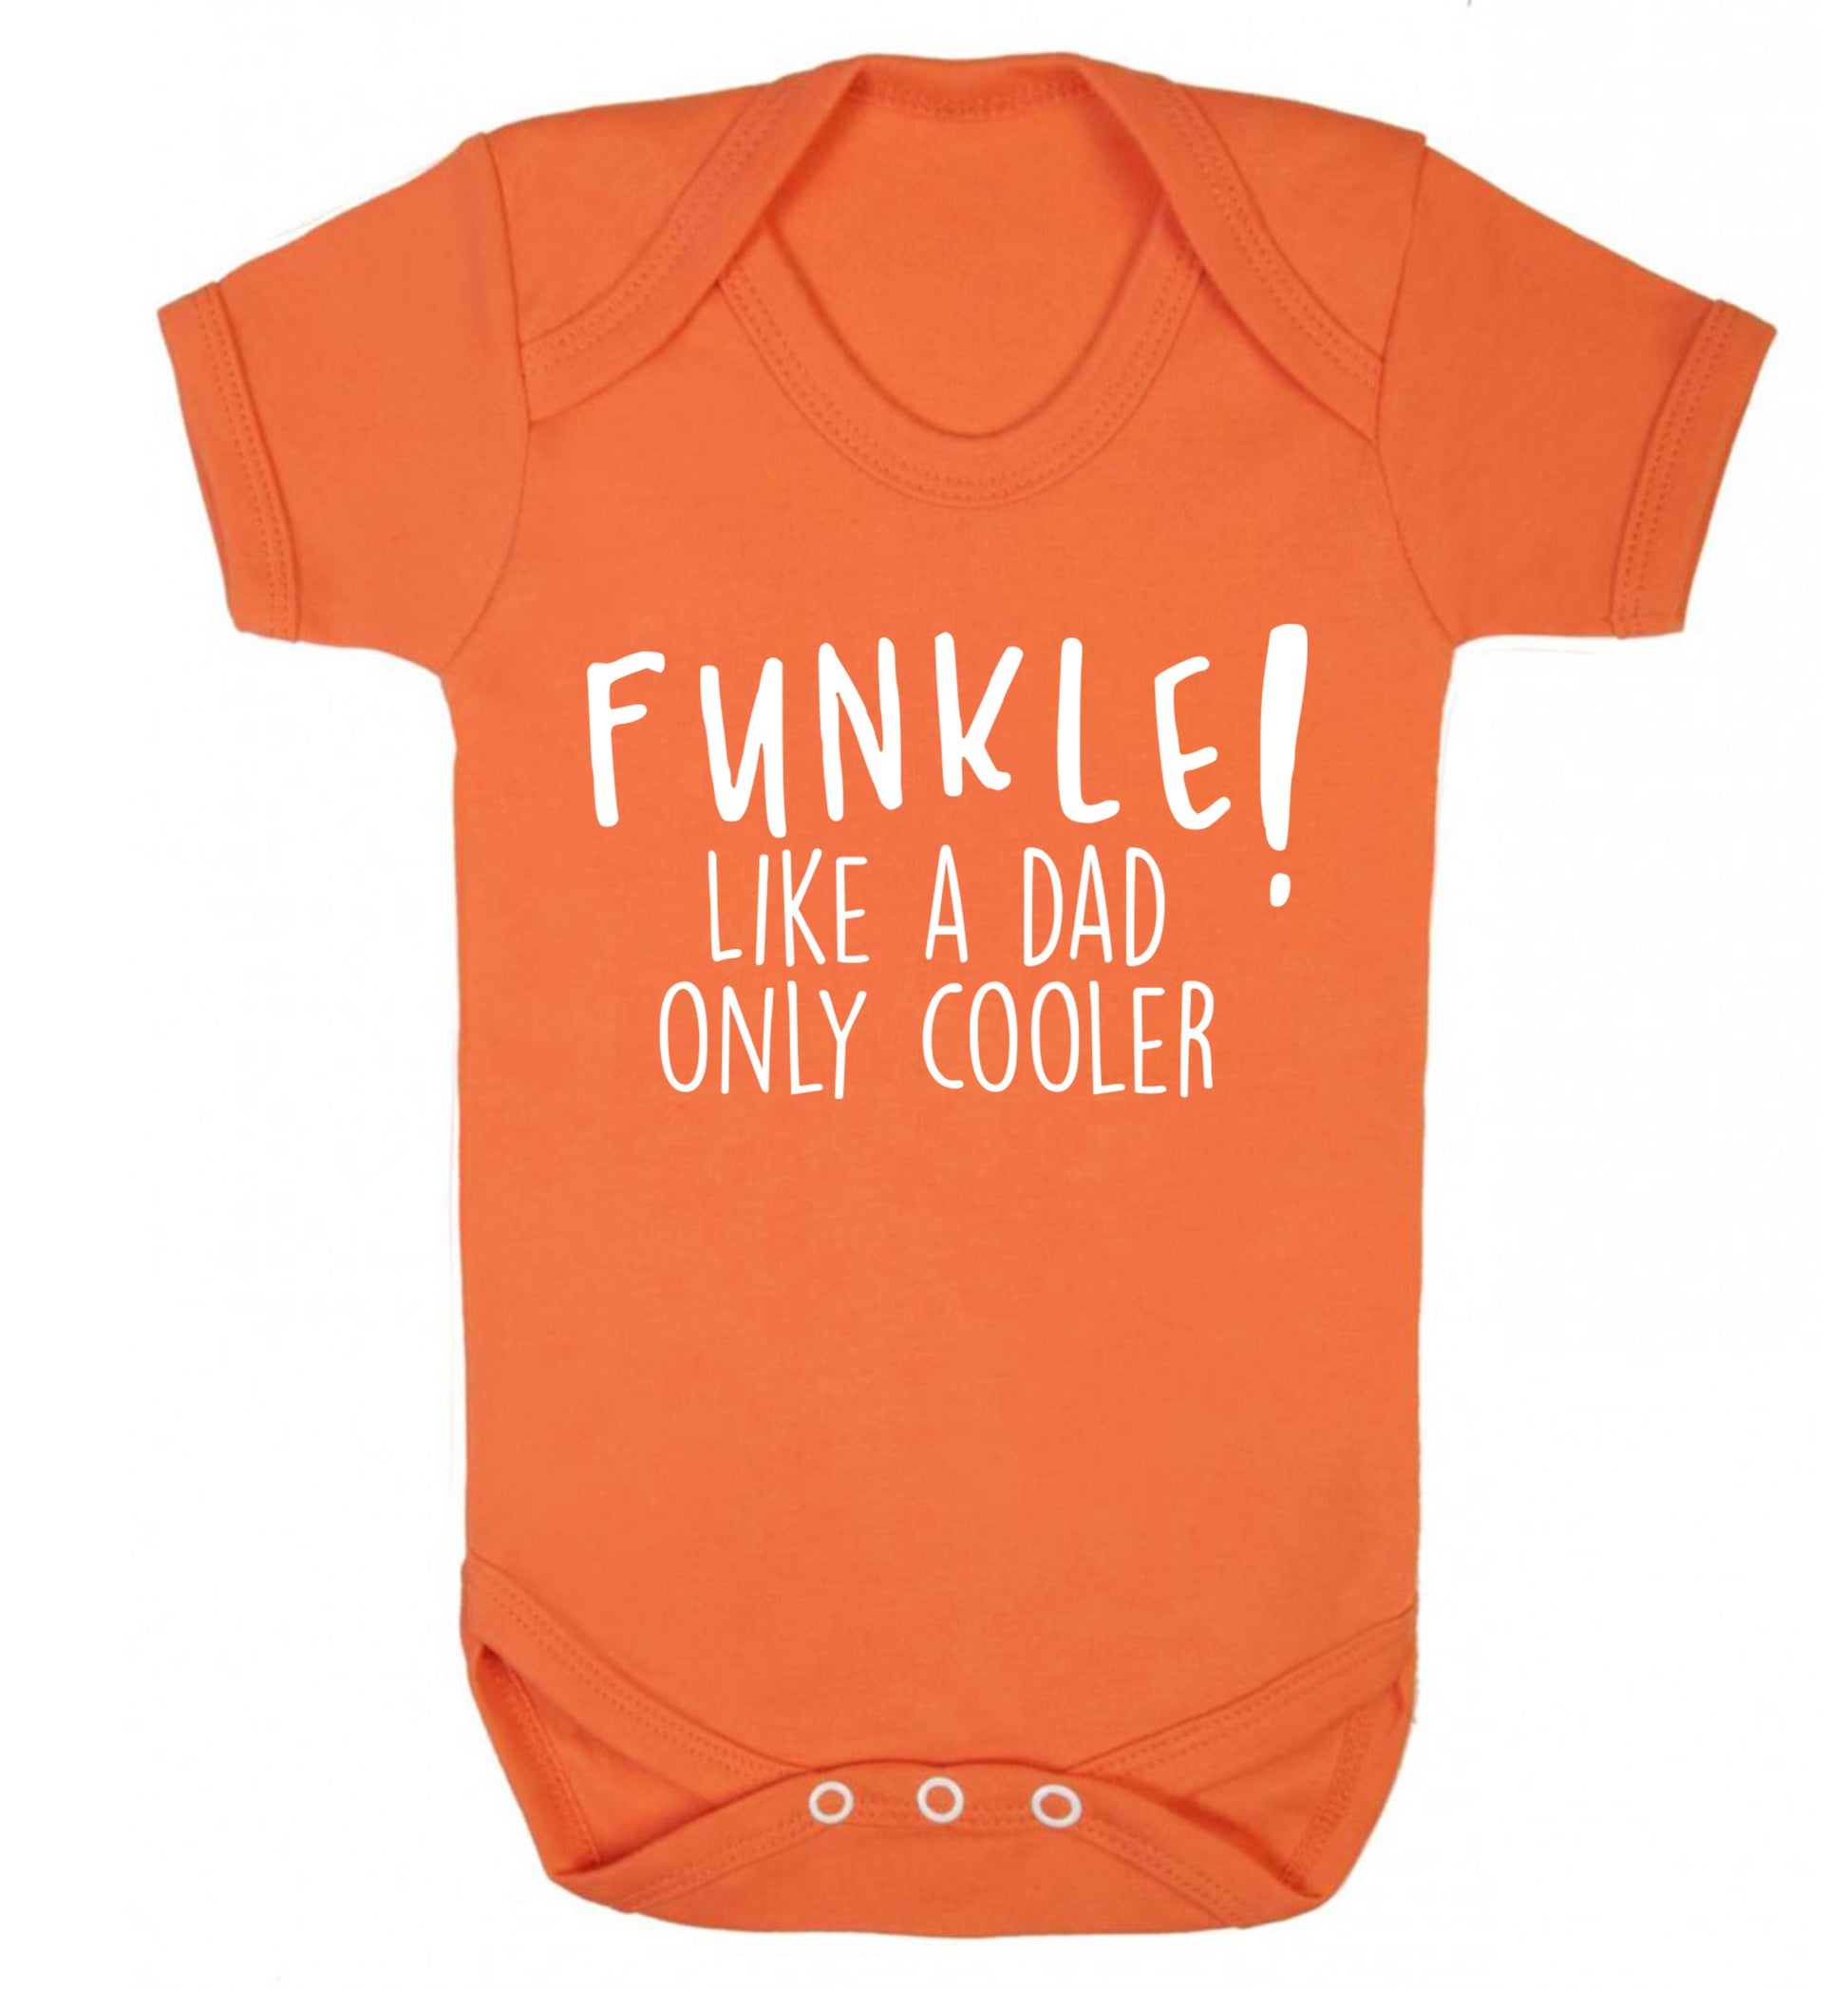 Funkle Like a Dad Only Cooler Baby Vest orange 18-24 months